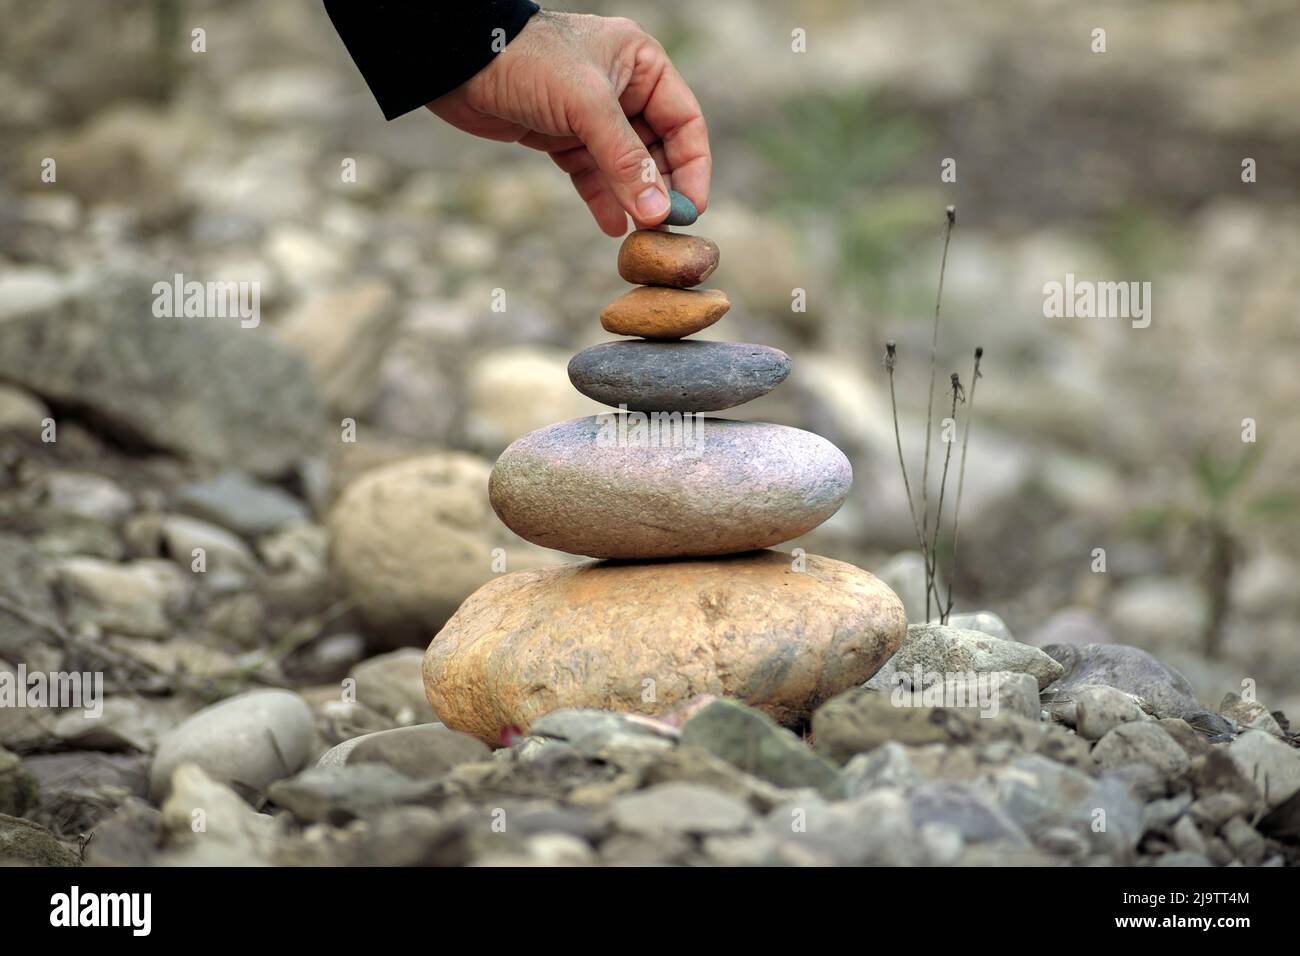 Zen-Stil Steinpyramide in einer natürlichen Umgebung mit einer Hand, die sanft legt einen Stein auf, die Frieden, Harmonie und Respekt für die Natur vermittelt Stockfoto